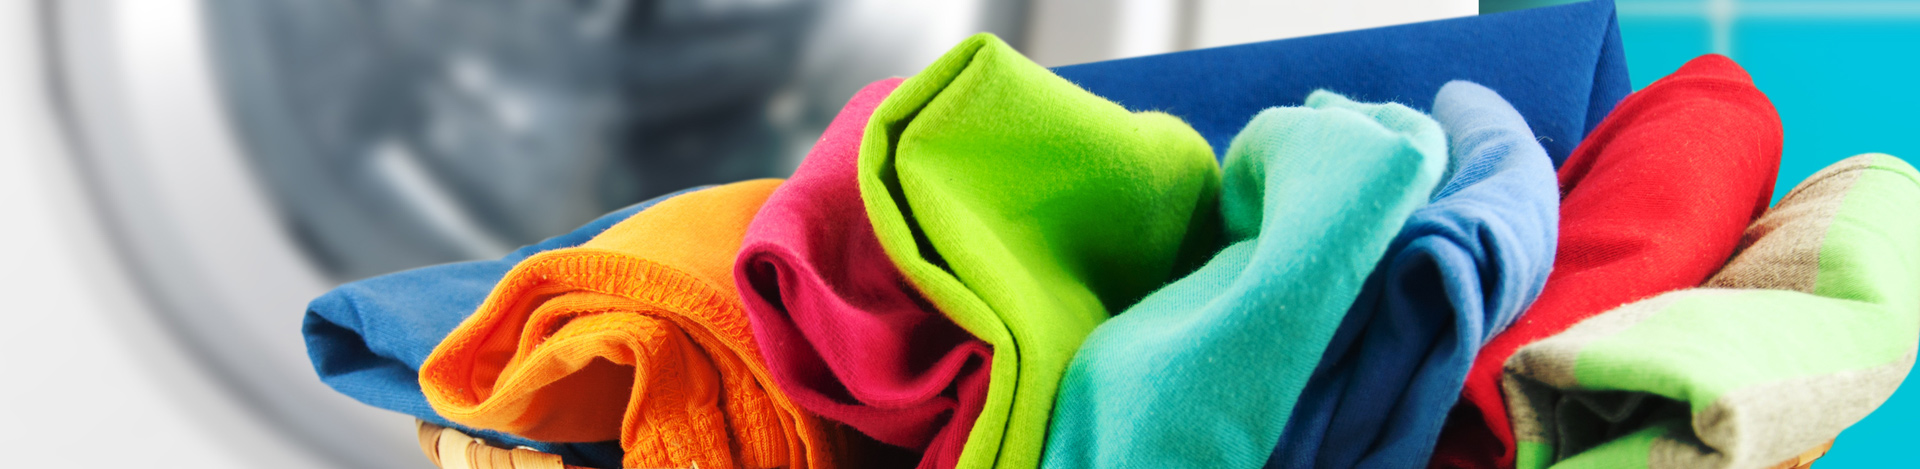 détergents lave-linge adoucisseur lessives lessive en poudre